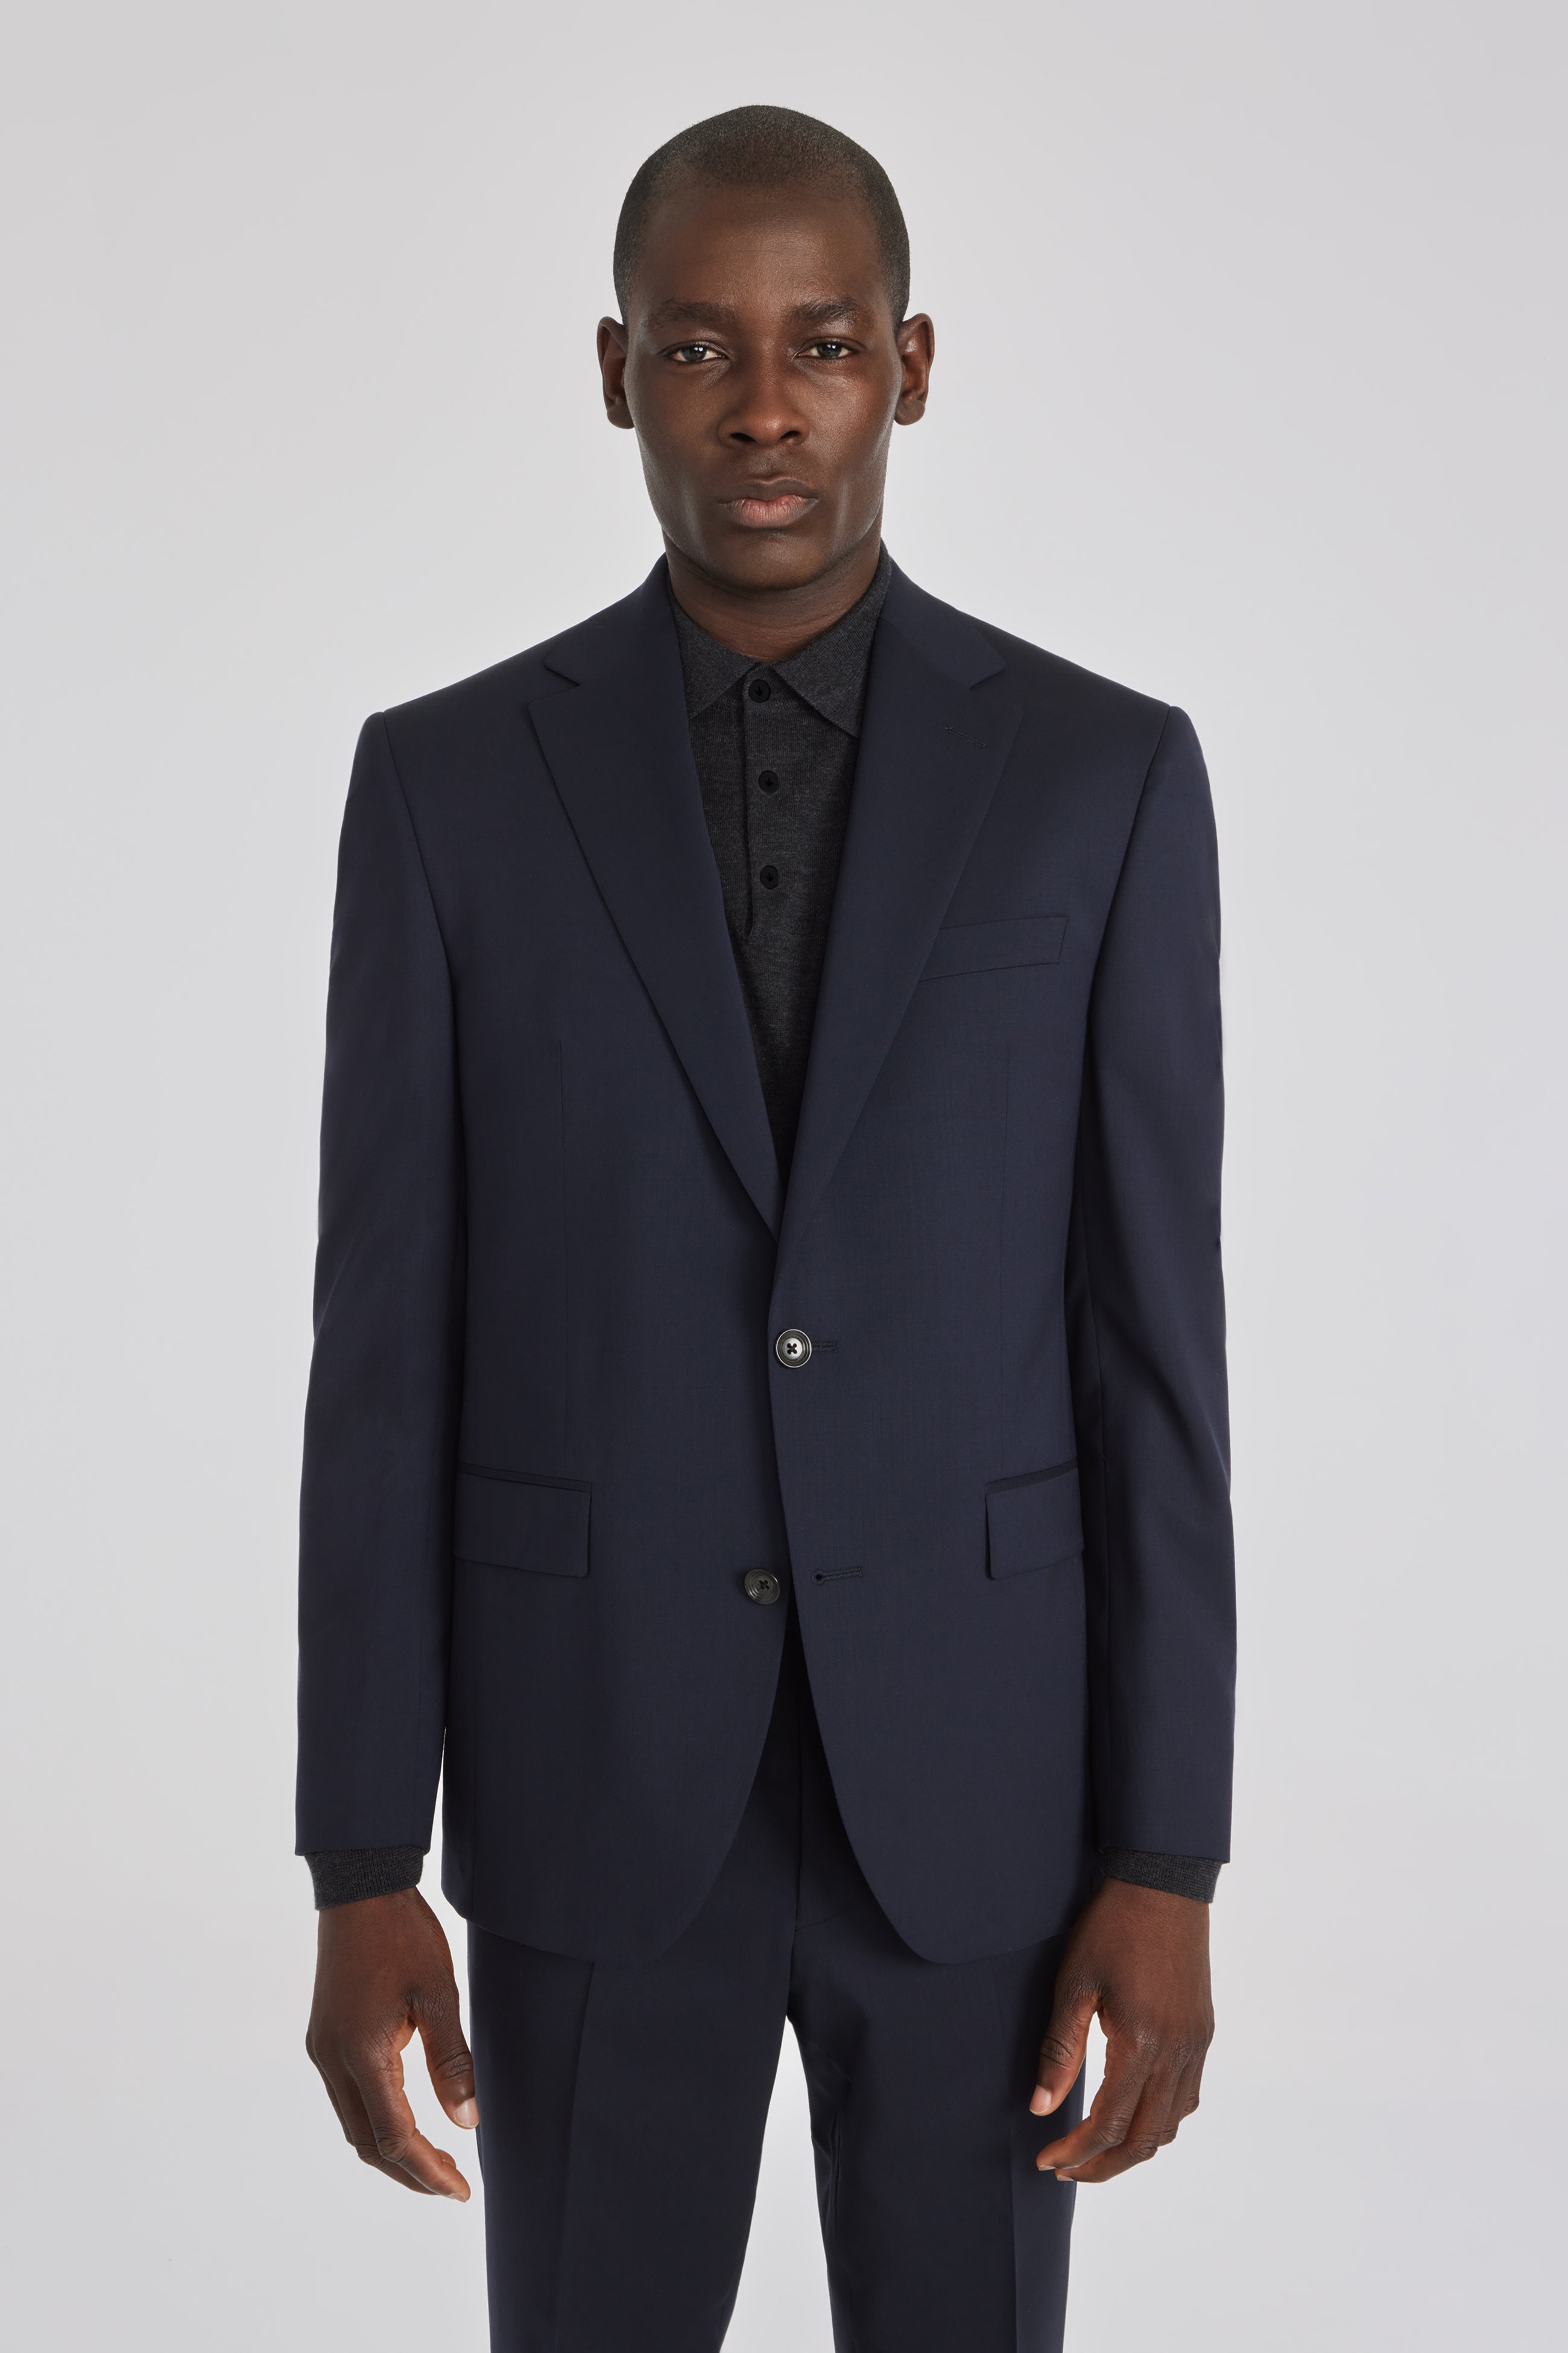 7 Suit Separates Combinations for Men - Suits.com.au  Mens fashion suits  casual, Suit separates, Blue suit jacket